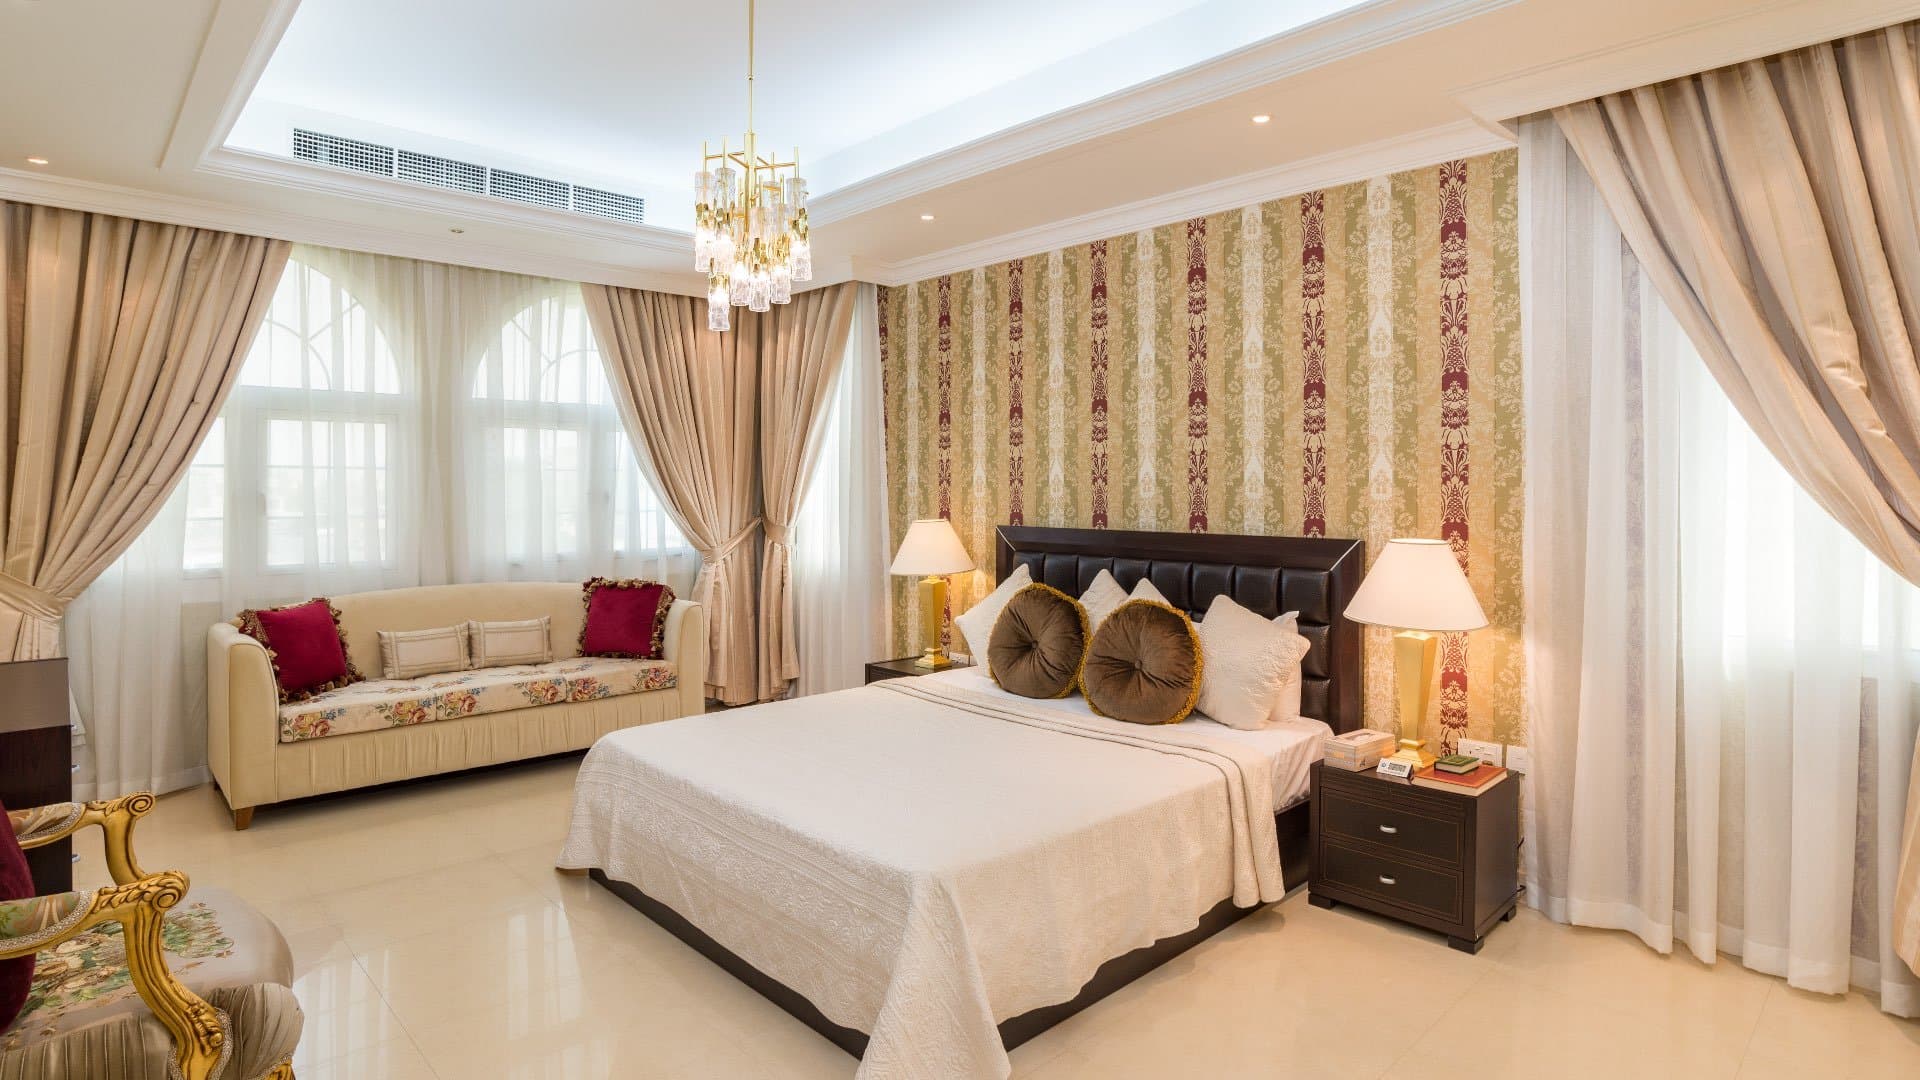 7 Bedroom Villa For Rent Al Barsha 3 Lp08020 1c88e31a044ca400.jpg